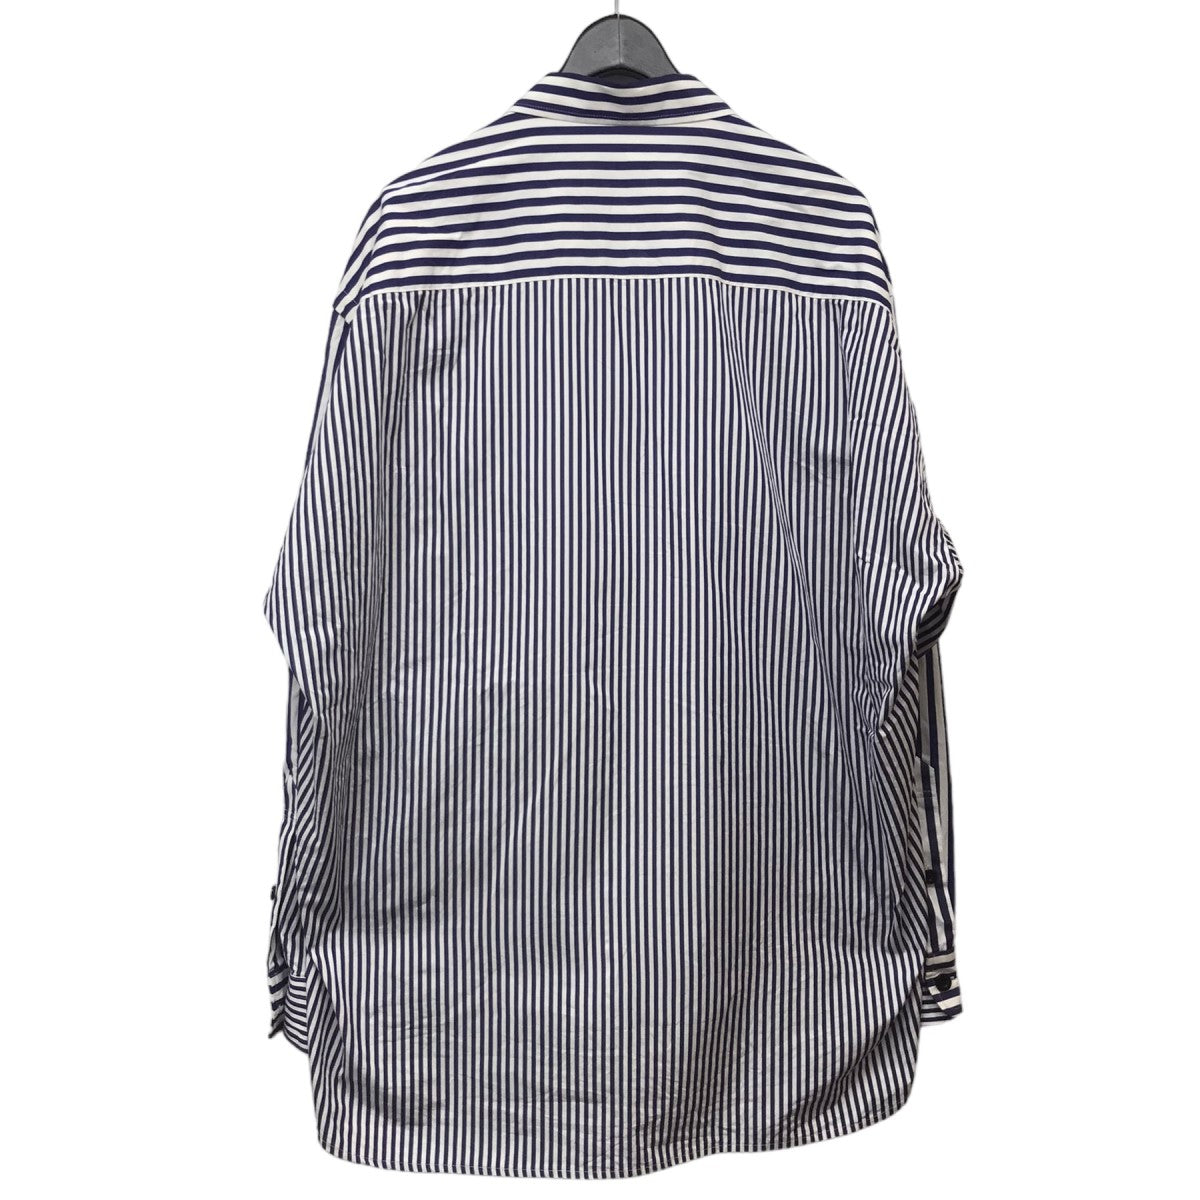 23SS「Thomas Mason Cotton Poplin L S Shirt」 ストライプコットンポプリンシャツ 23-03038M